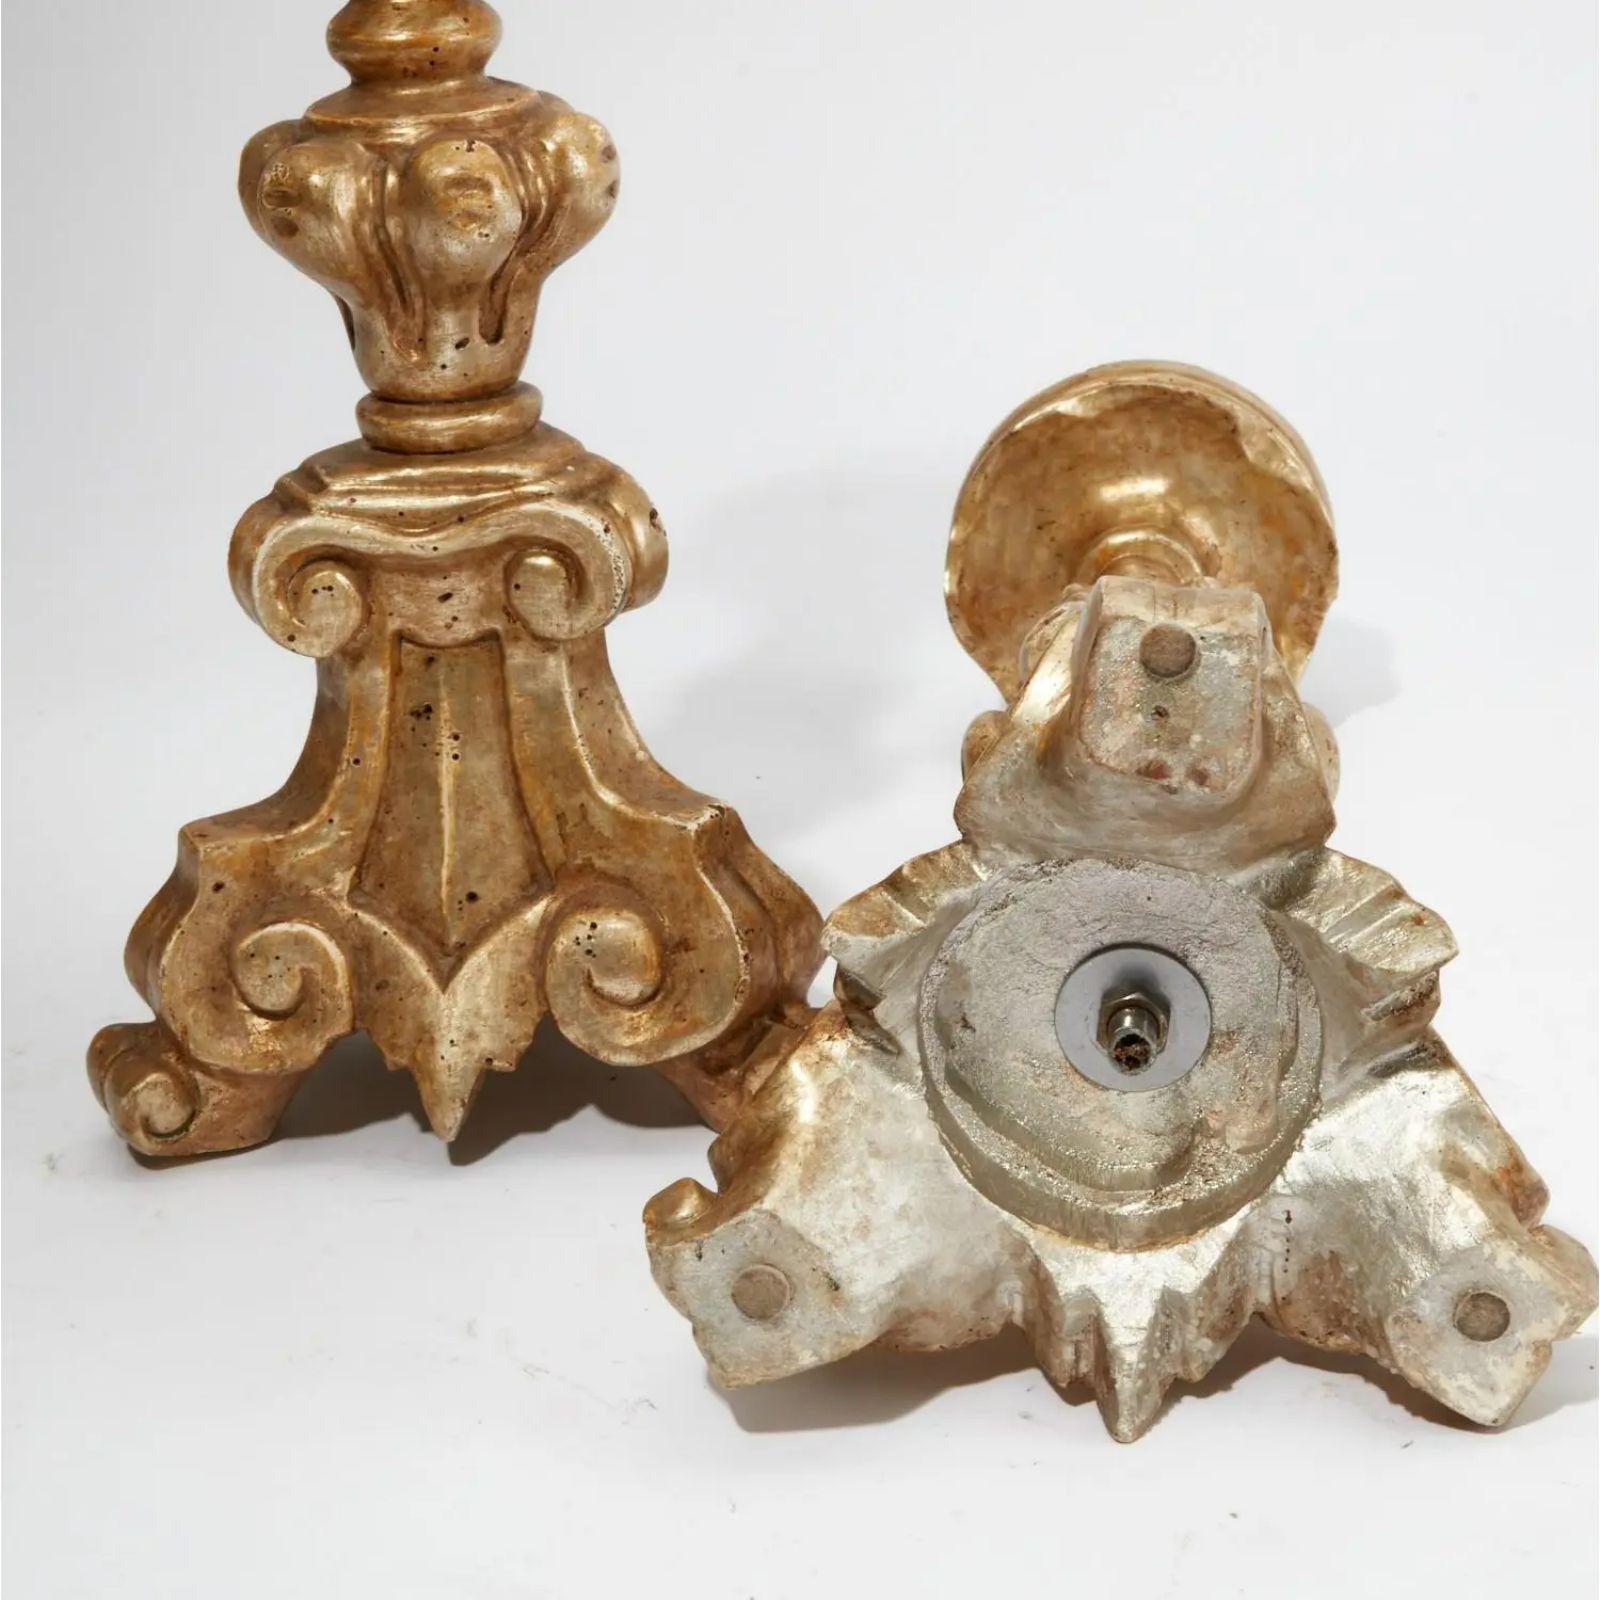 Paar italienische Kerzenständer aus Giltwood im Stil des 18. Jahrhunderts. Jede von Thomas Morgan und verfügt über echte Weißgold vergoldetes Finish auf handgeschnitztem Holz.

Zusätzliche Informationen: 
MATERIALIEN: Giltwood
Farbe: